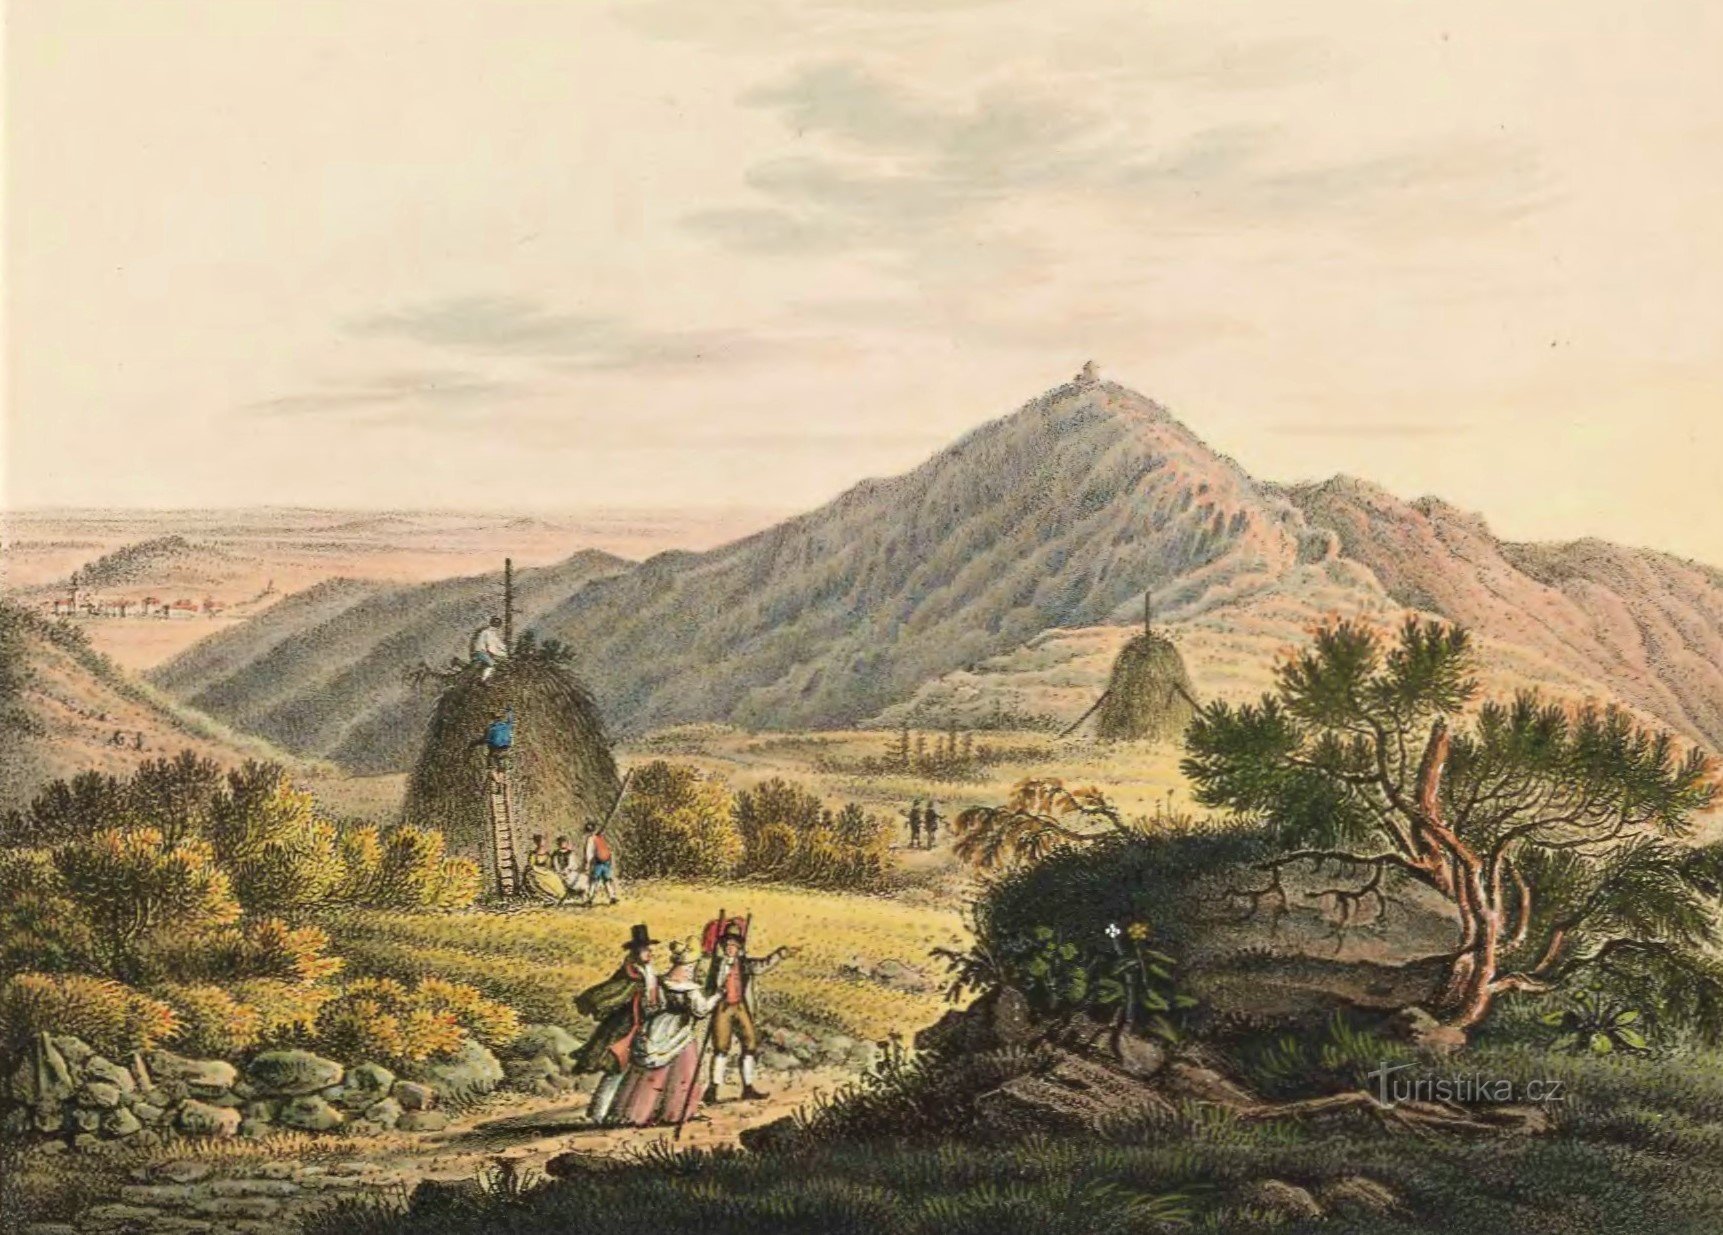 Sněžka látképe a sziléziai oldalról a 19. század elejéről